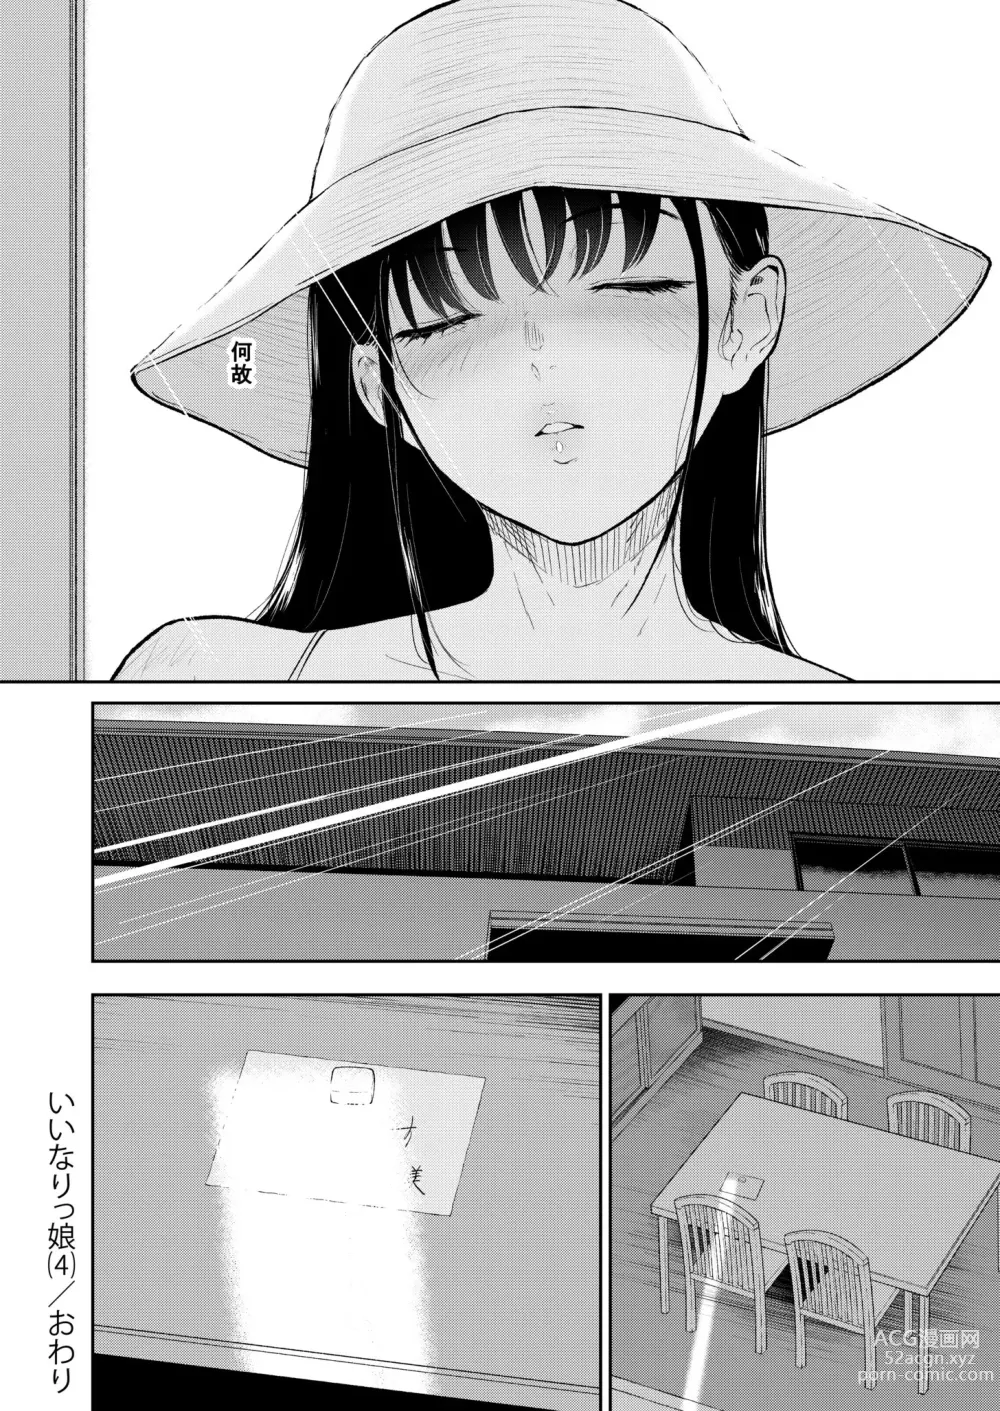 Page 34 of manga Iinarikko 4